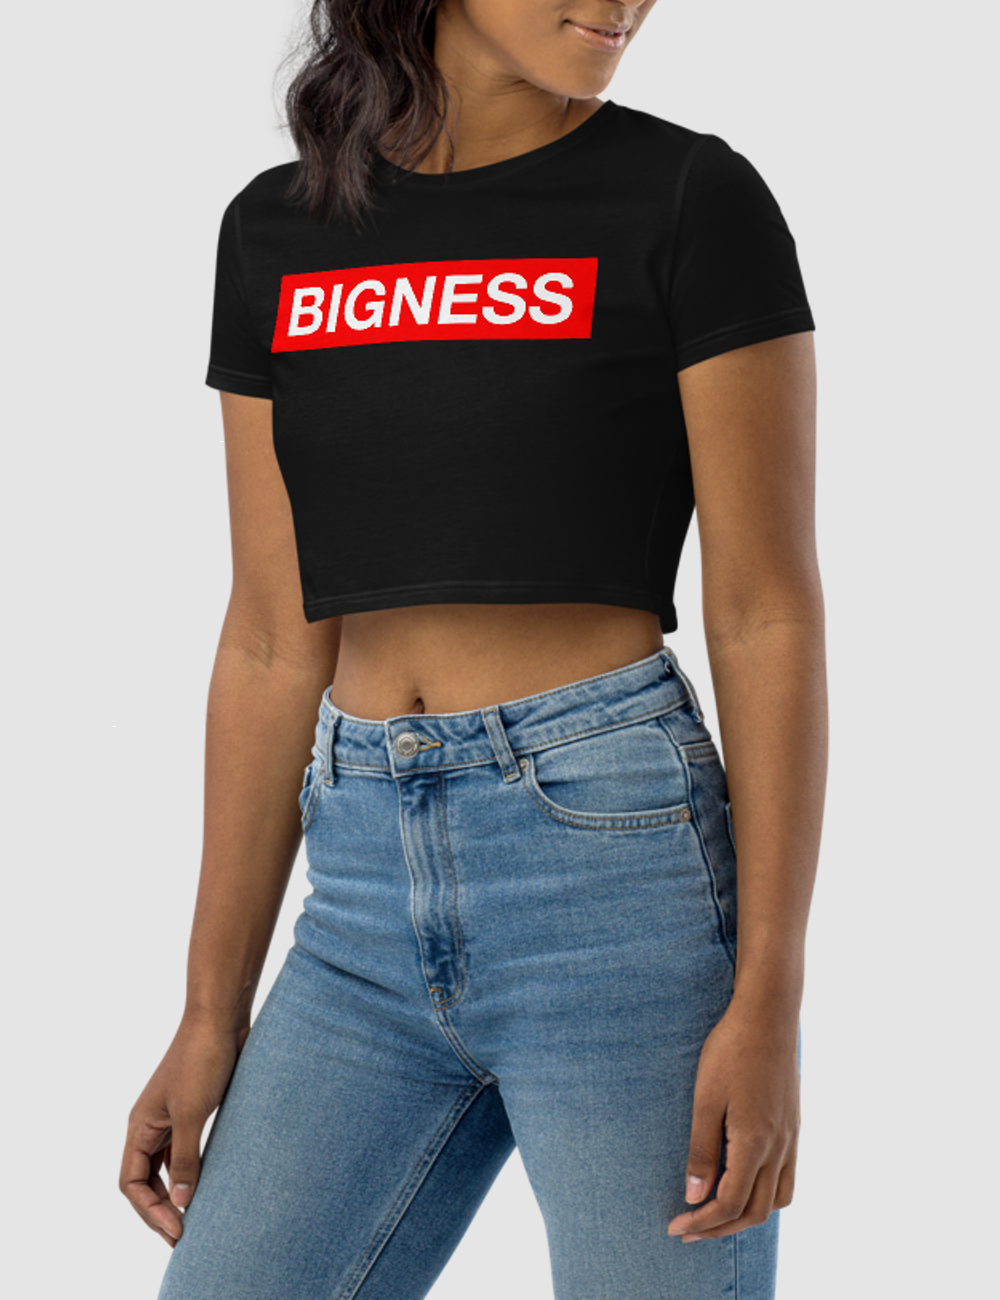 Bigness | Women's Crop Top T-Shirt OniTakai